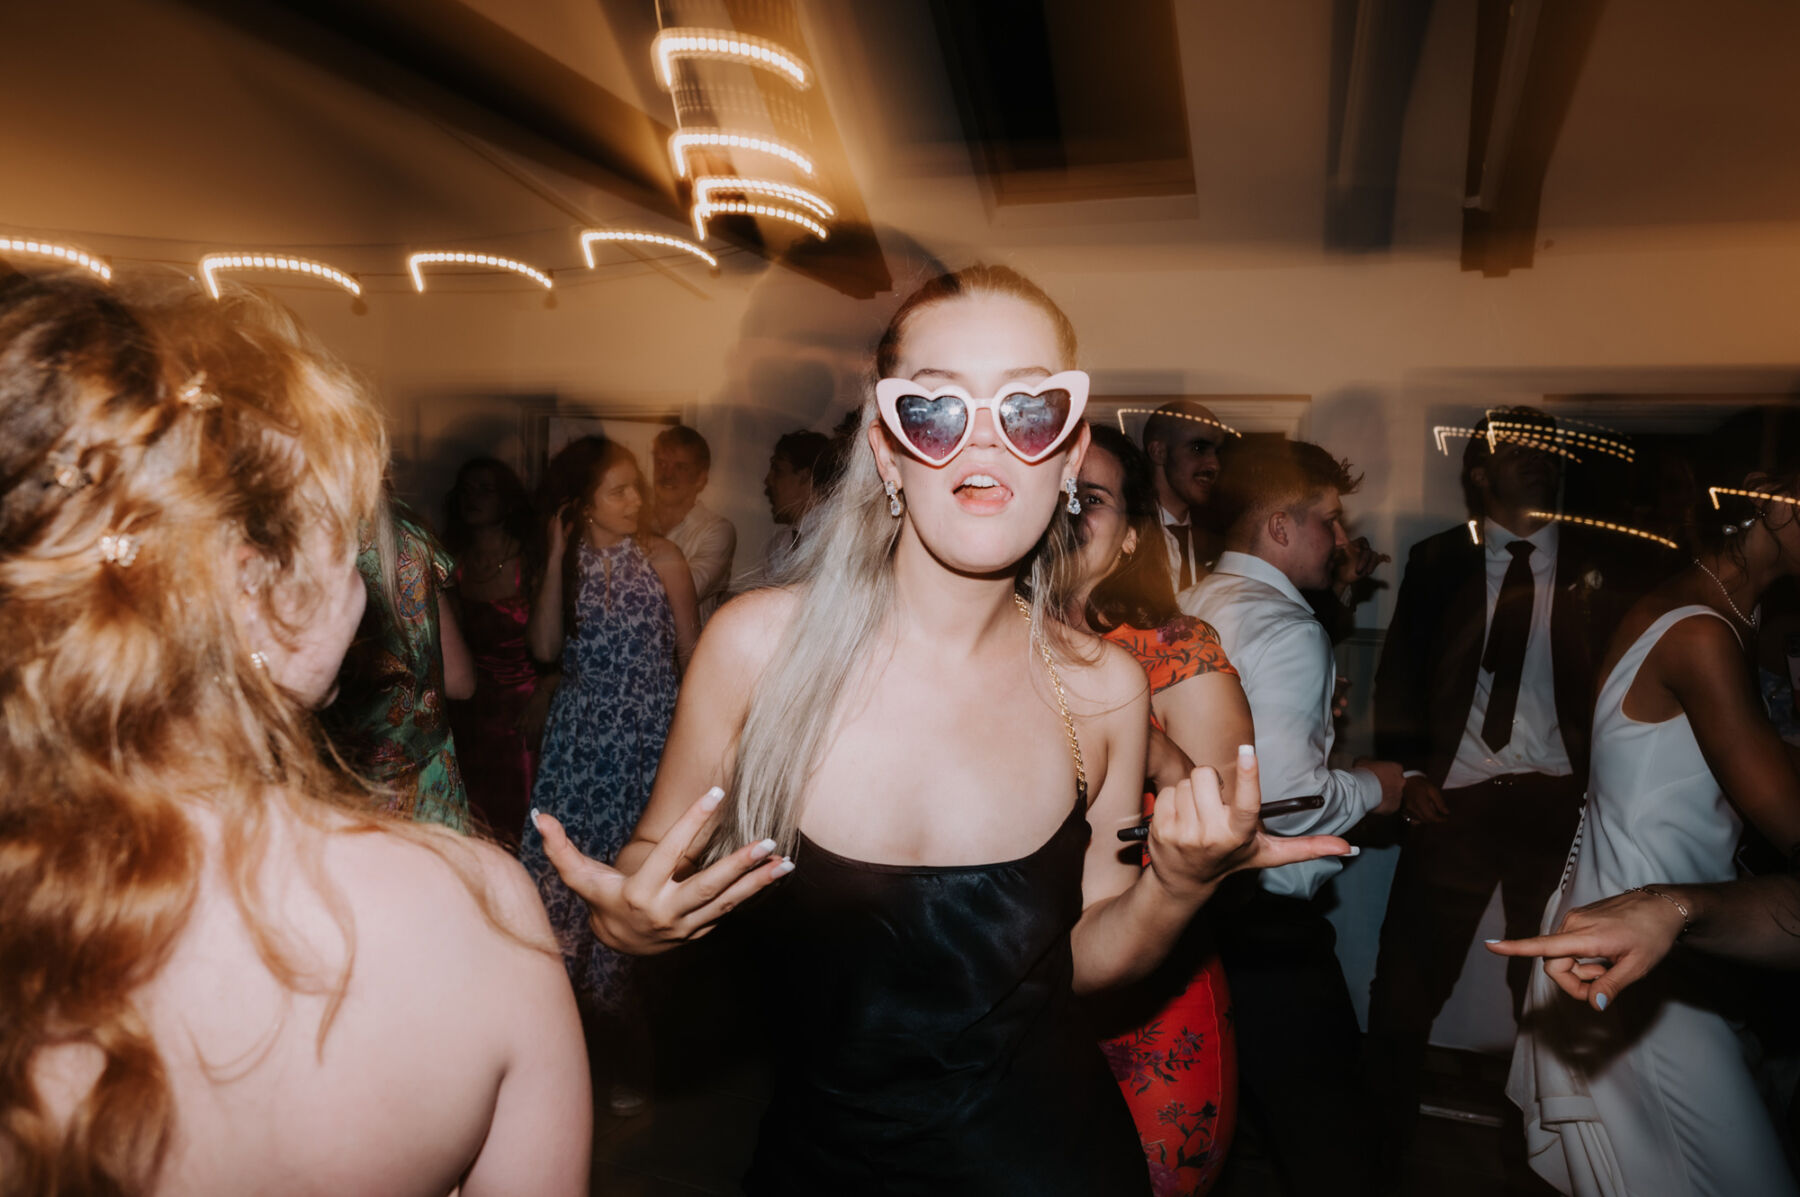 Wedding guest wearing heart sunglasses dancing on the dance floor